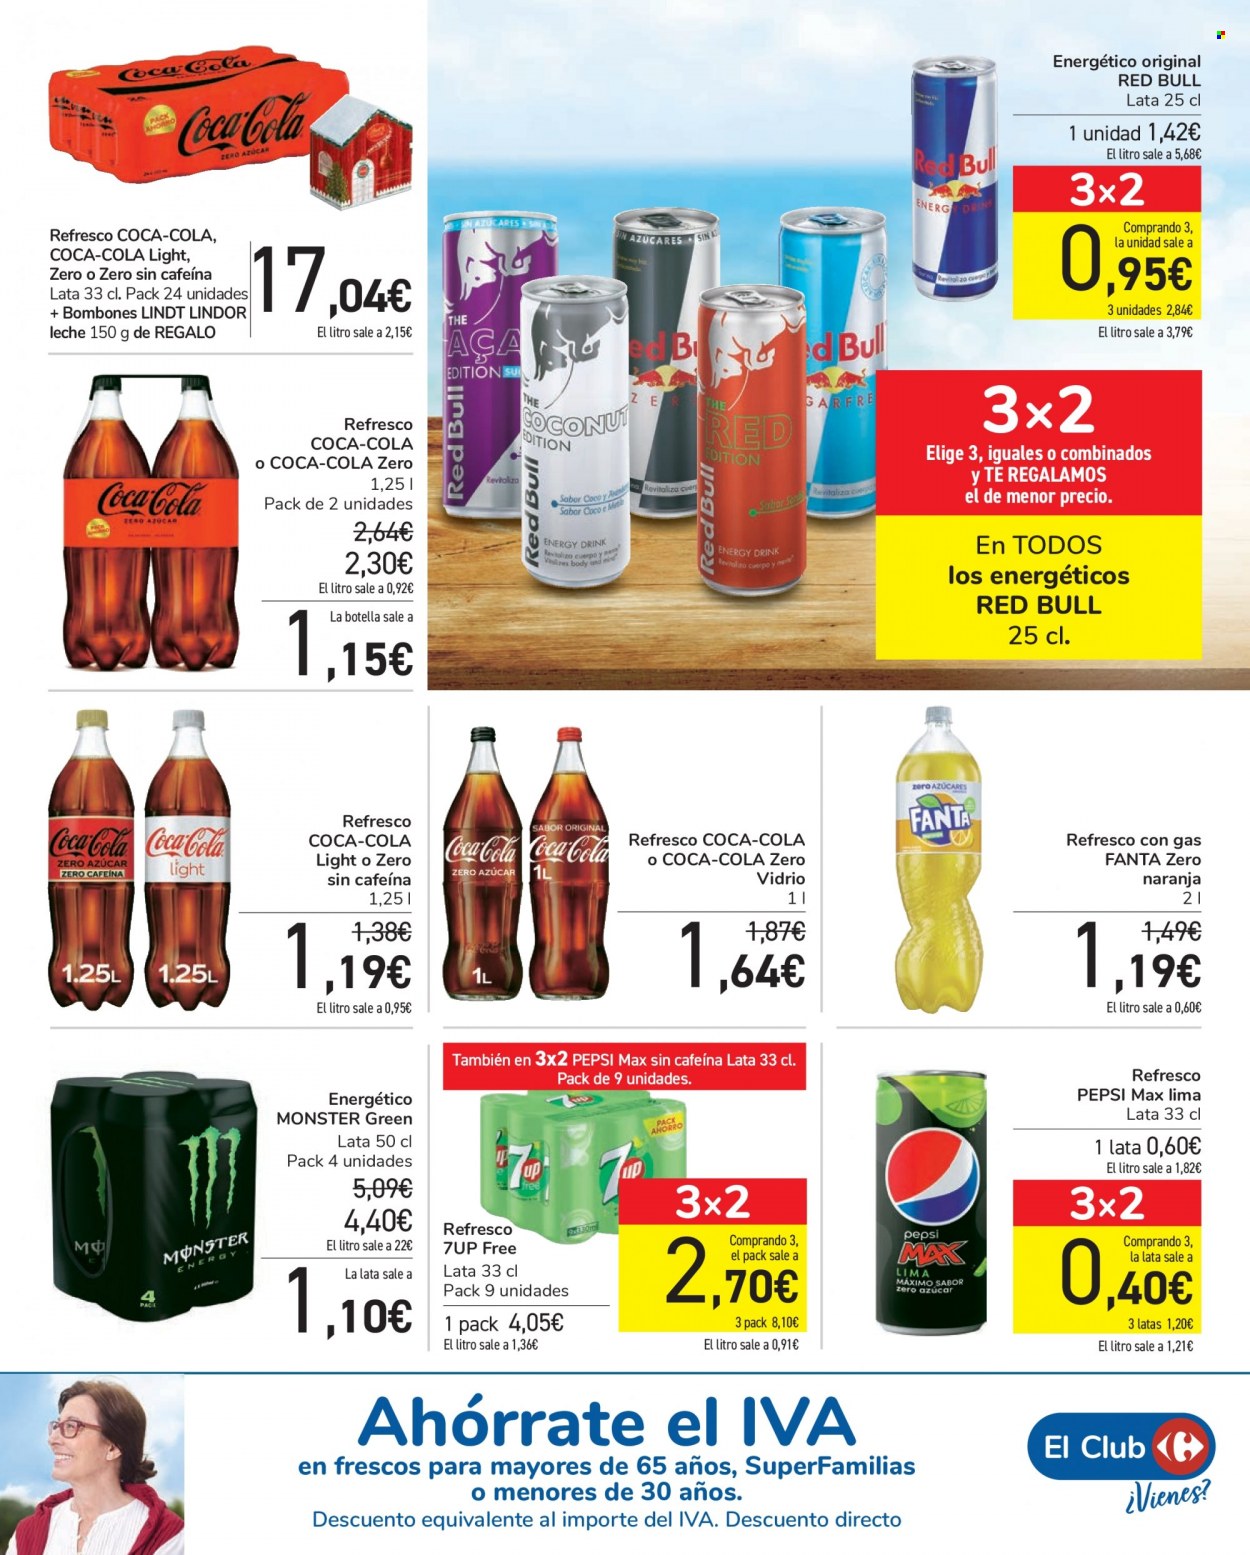 thumbnail - Folleto actual Carrefour - 24/11/21 - 02/12/21 - Ventas - bombones, Lindt, refresco, Coca-cola, Coca-Cola Light, bebida energética, Fanta, Monster Energy, Red Bull, Pepsi, Coca-Cola Zero, 7UP, lima. Página 45.